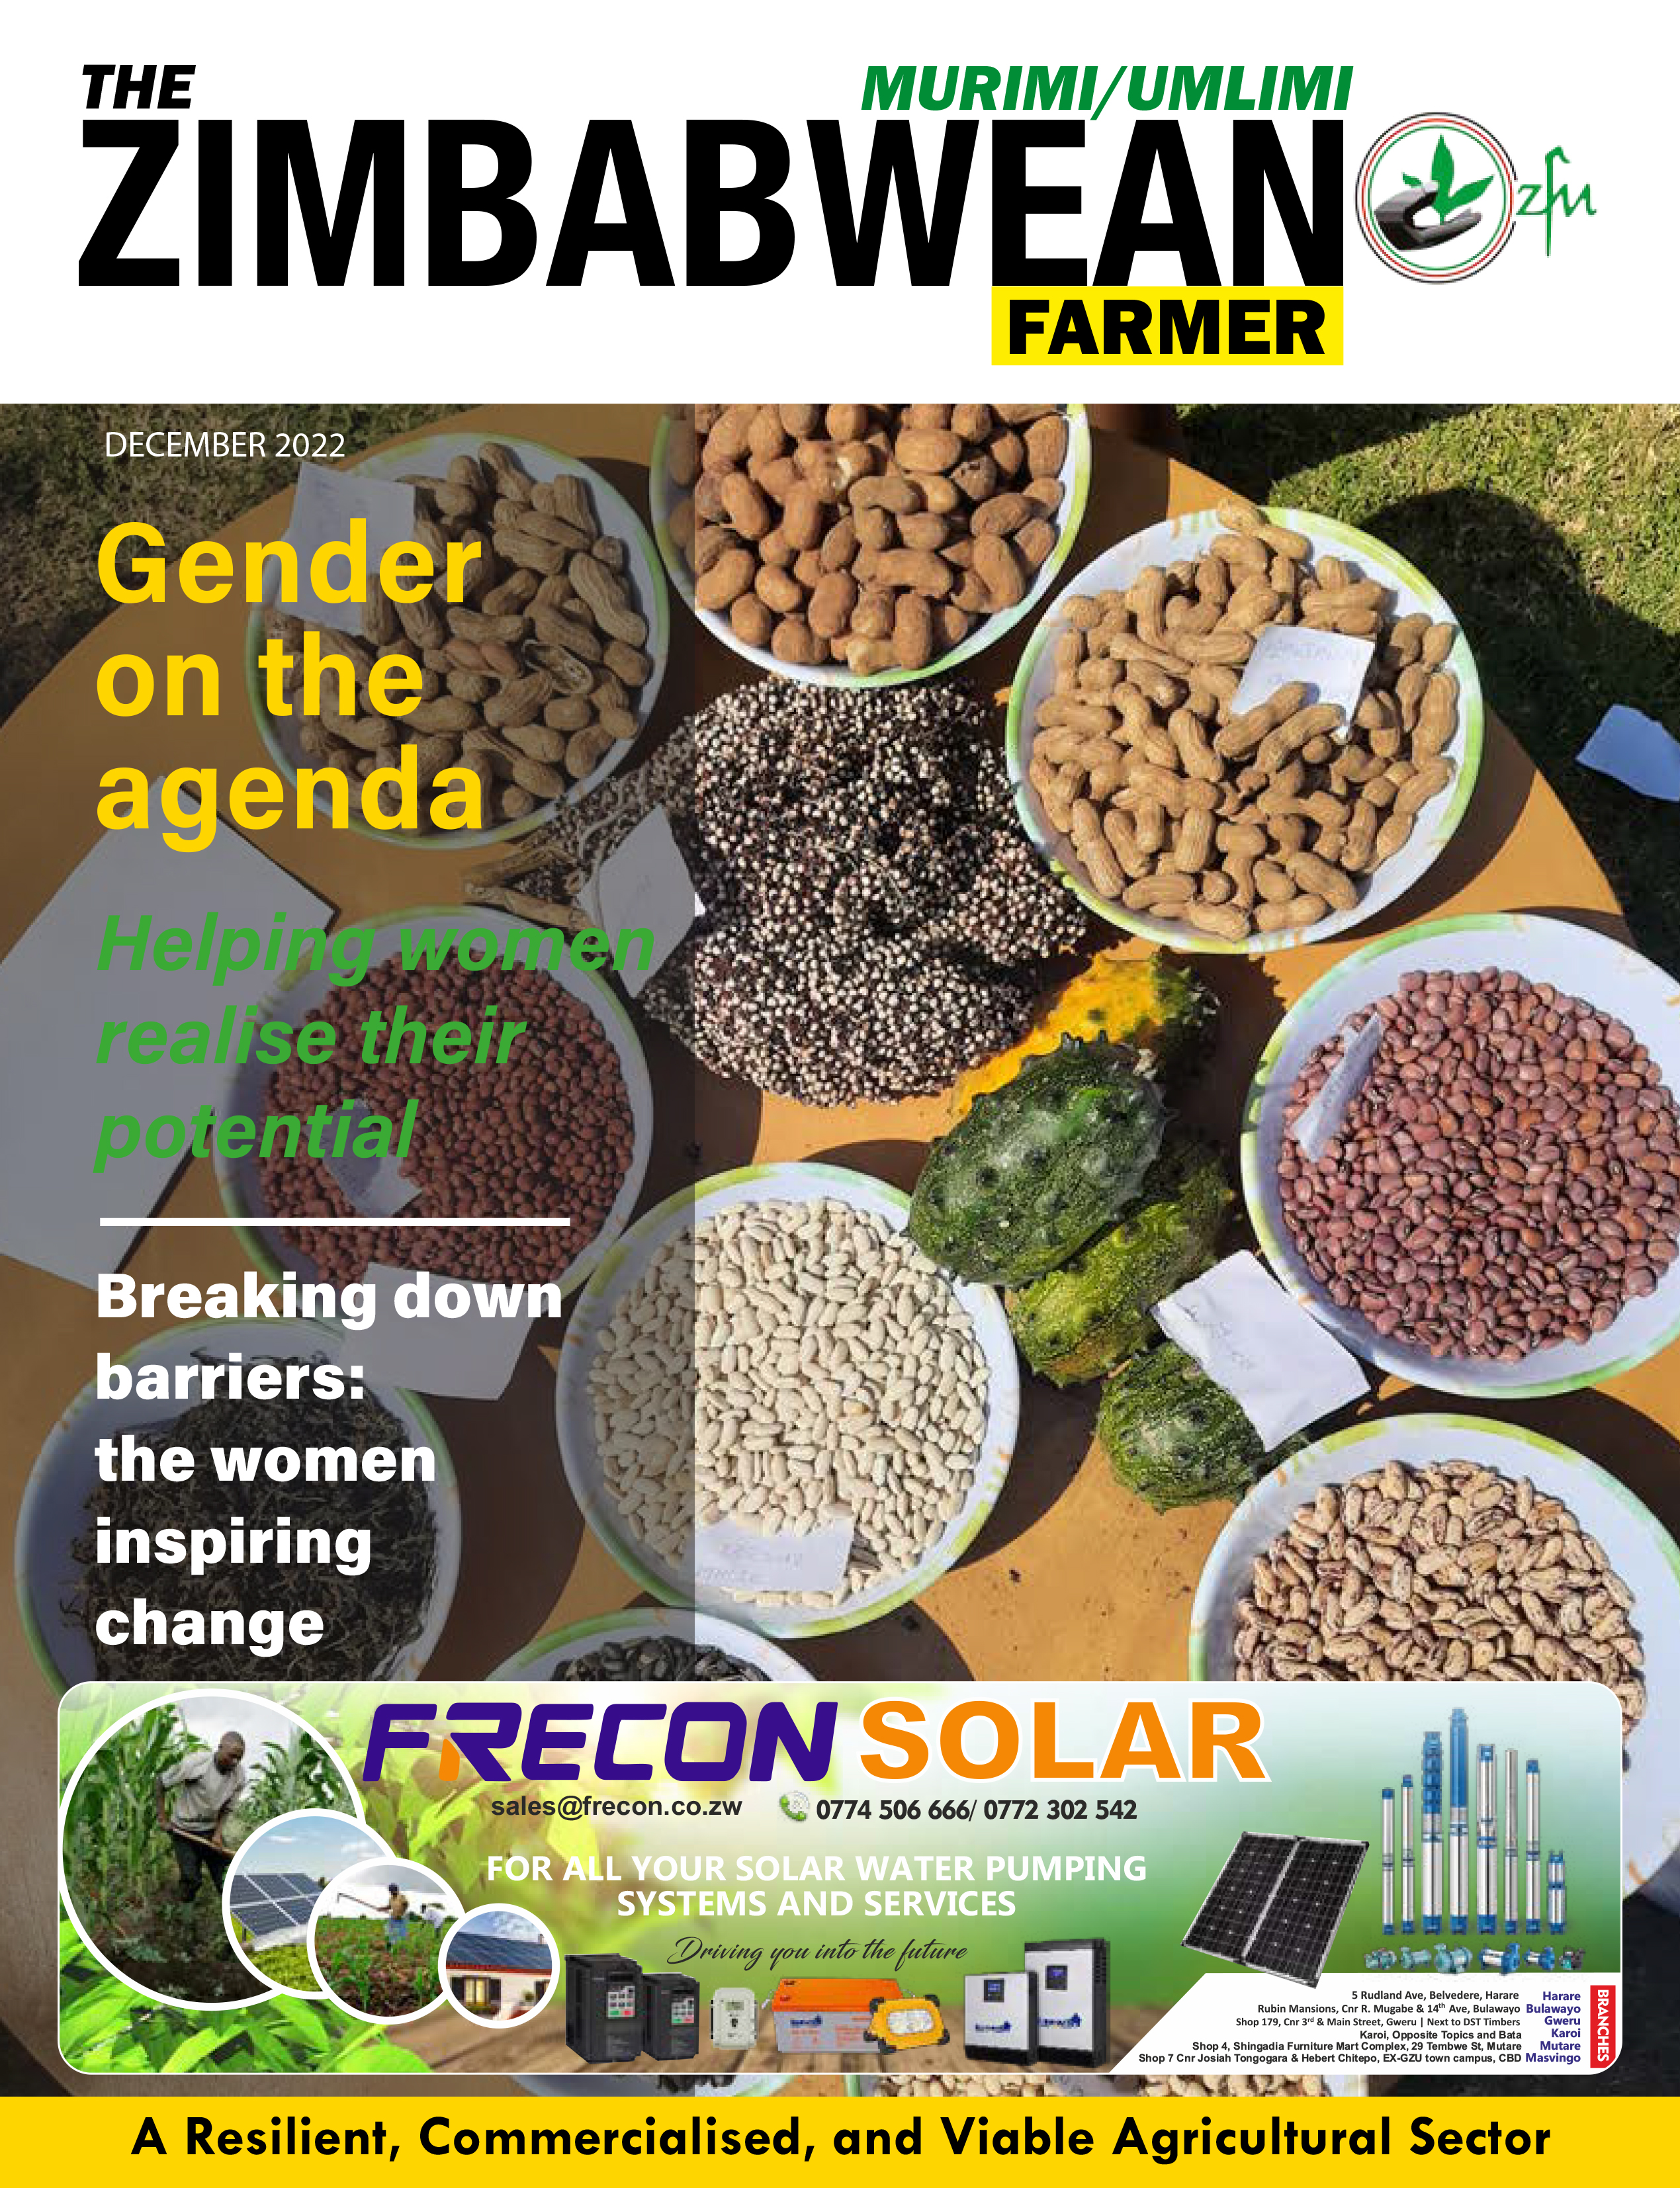 The Zimbabwean Farmer, Murimi/Umlimi Magazine Volume 3 2022